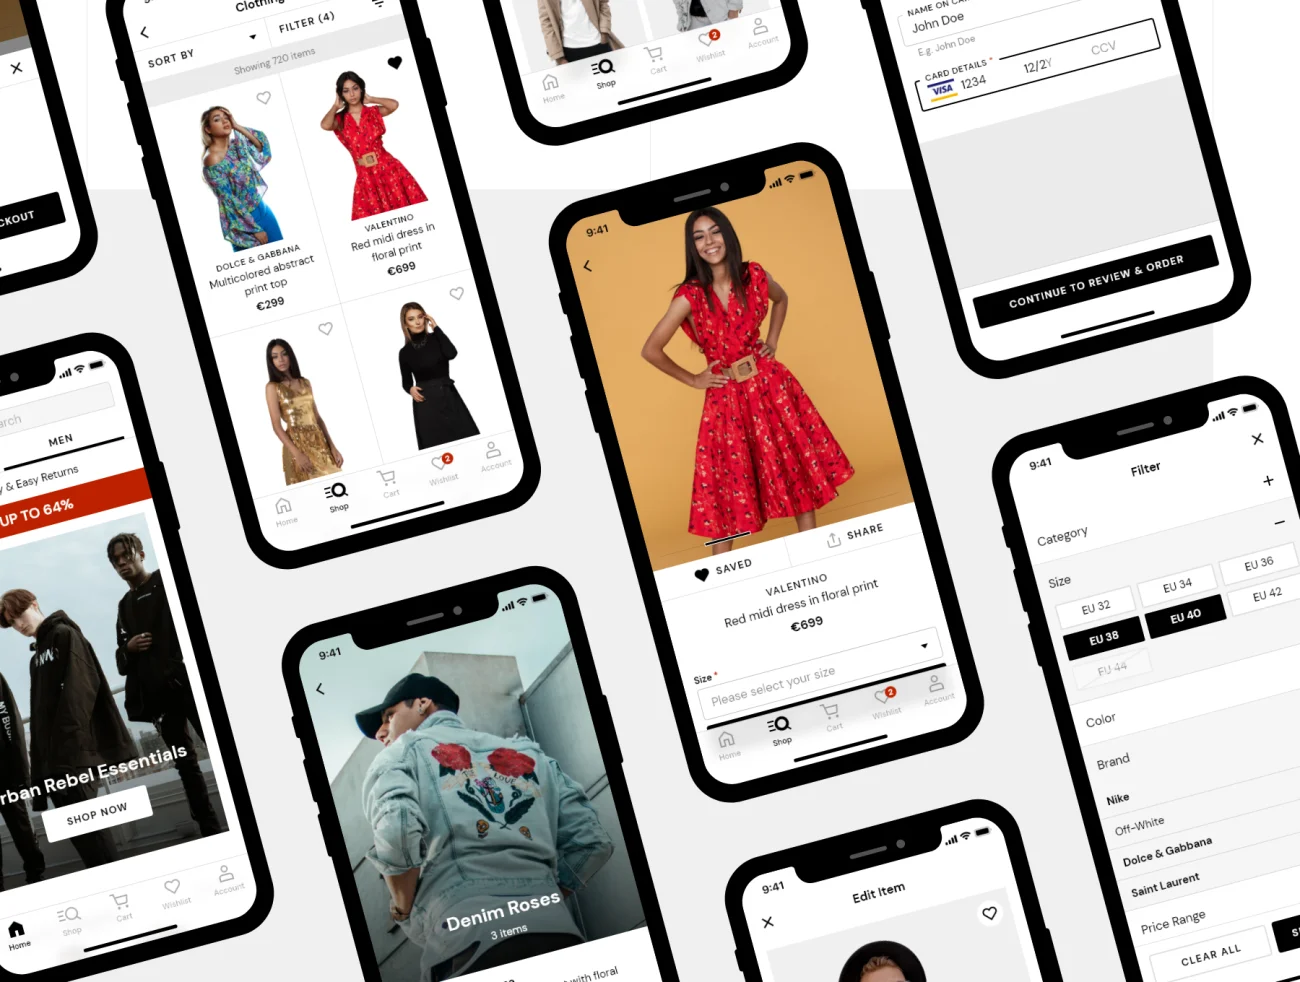 70屏服饰潮流电子商务iOS应用UI设计工具包 DUAL — e-commerce iOS UI Kit .xd插图3